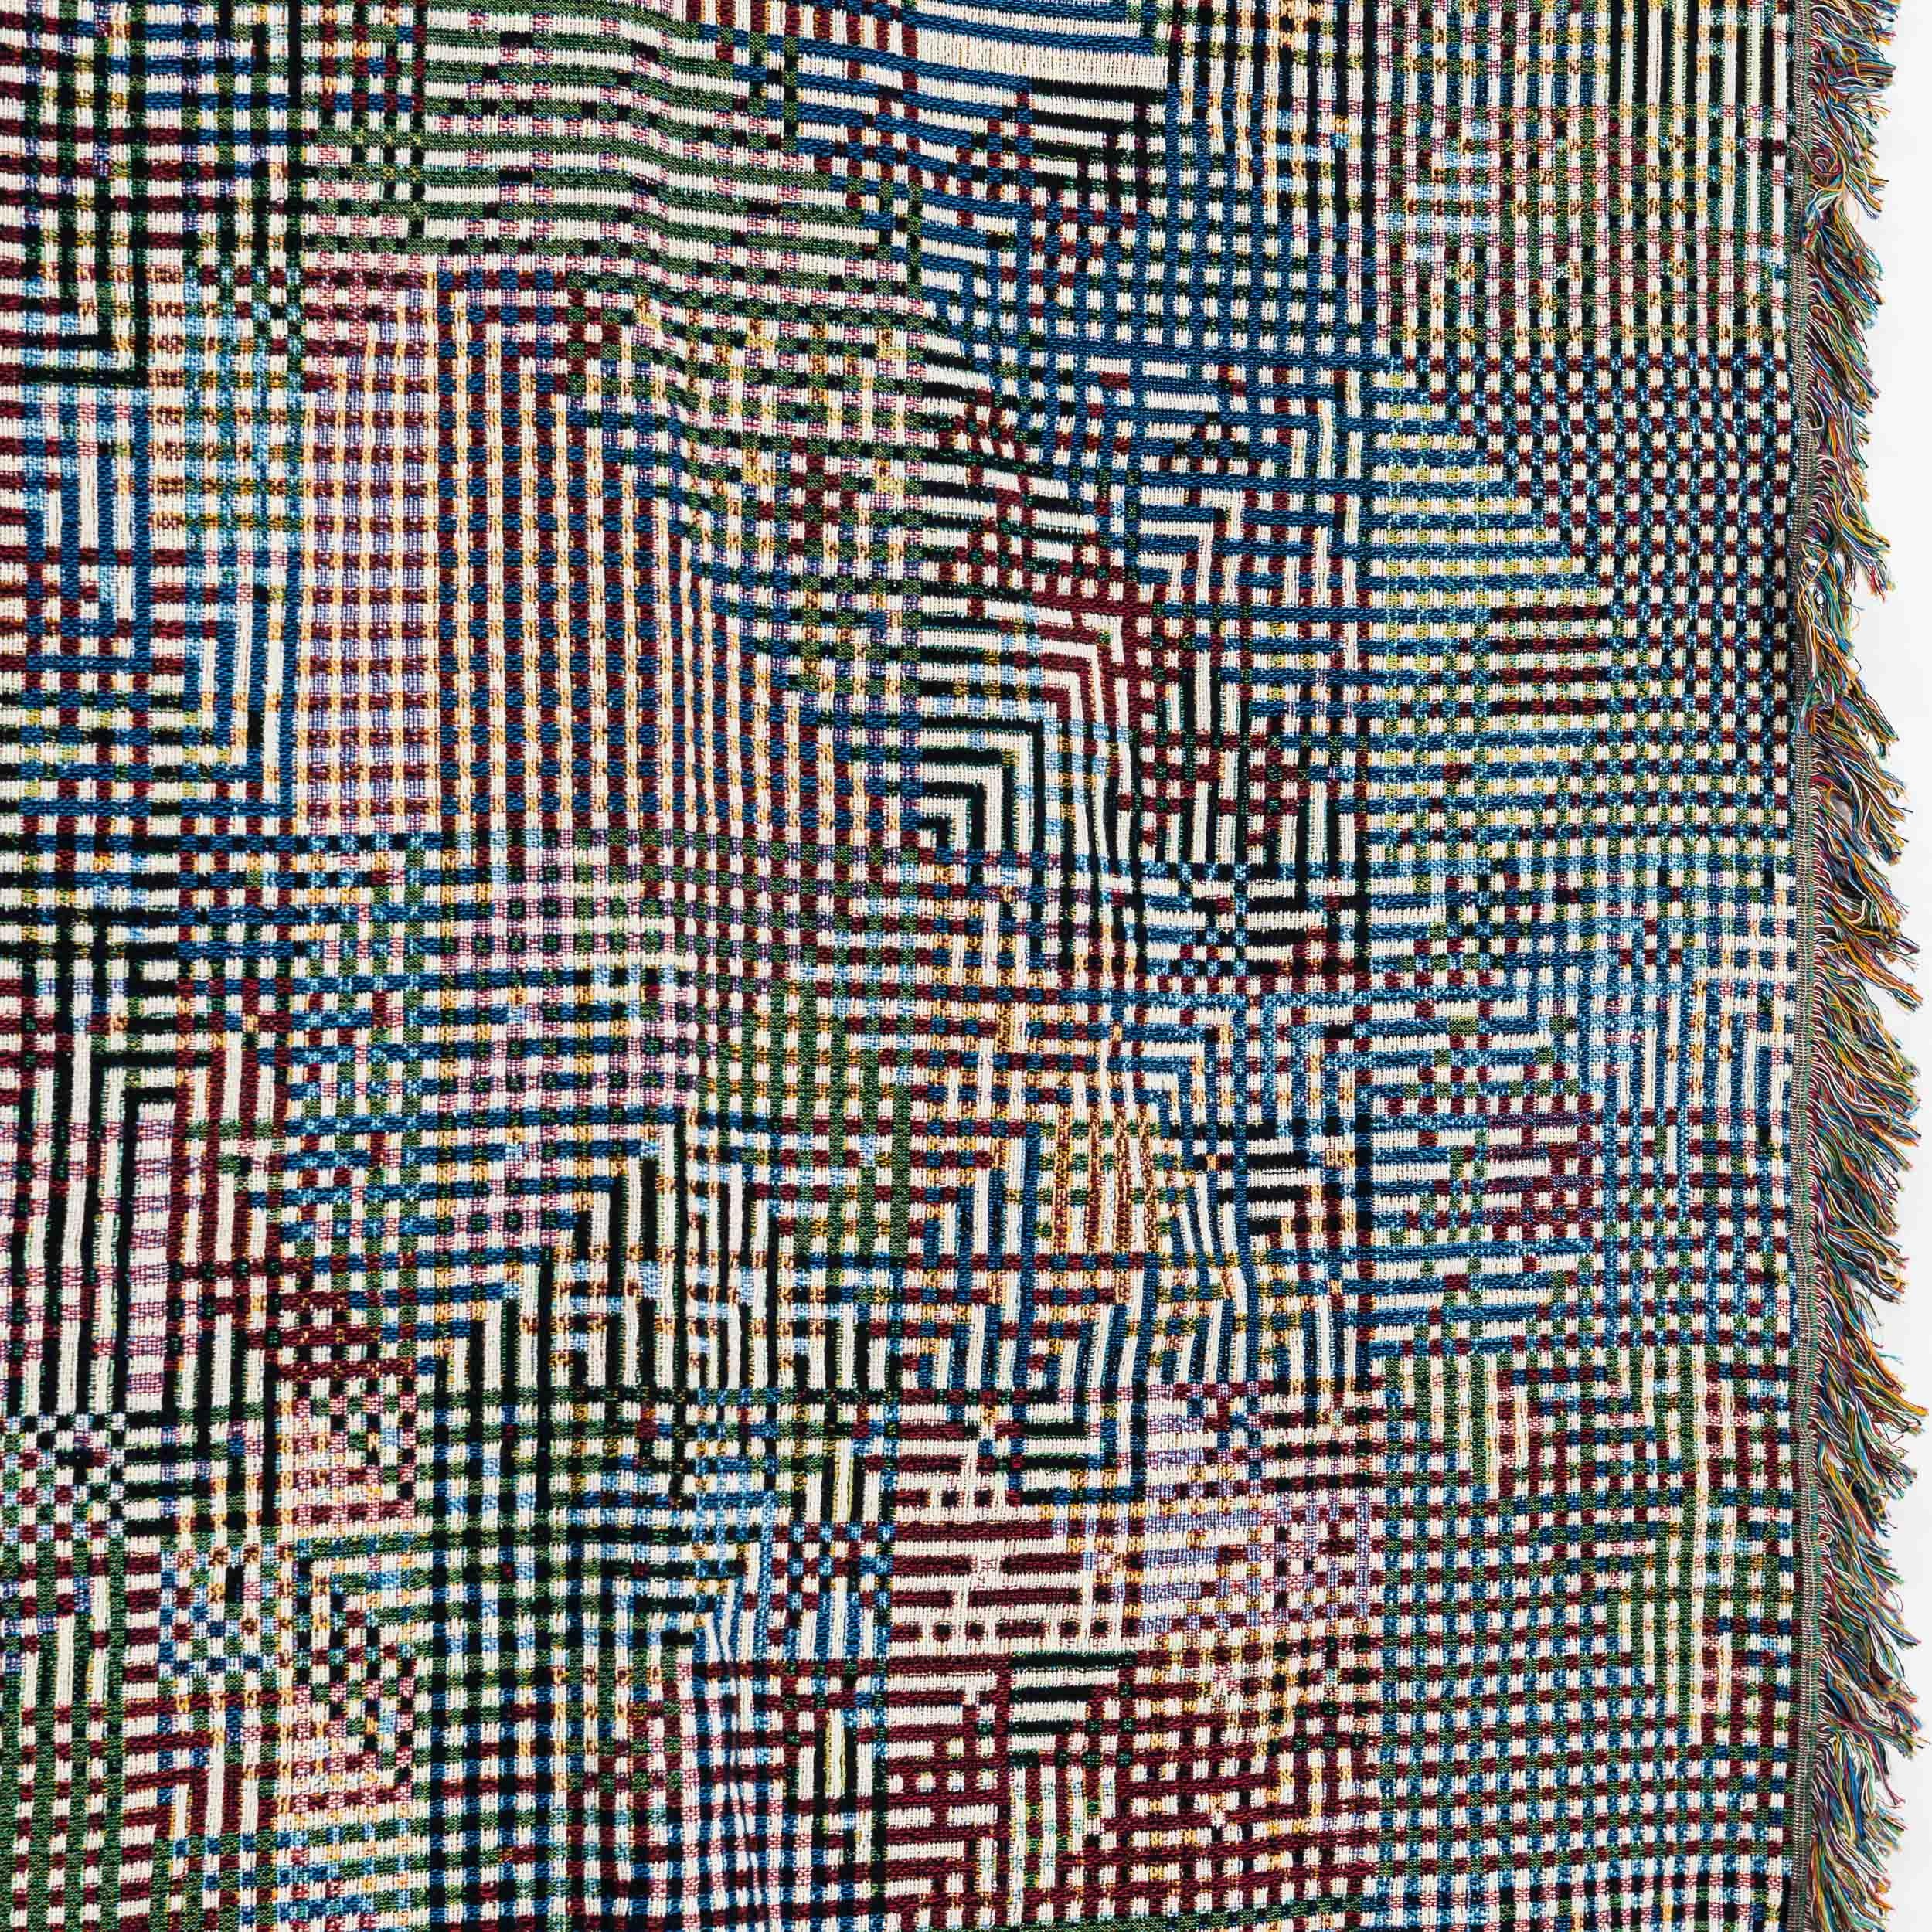 Bit Map 01, Luft Tanaka, Mehrfarbige Throw-Deckendecke aus gewebter Baumwolle mit grafischem Druck, 60